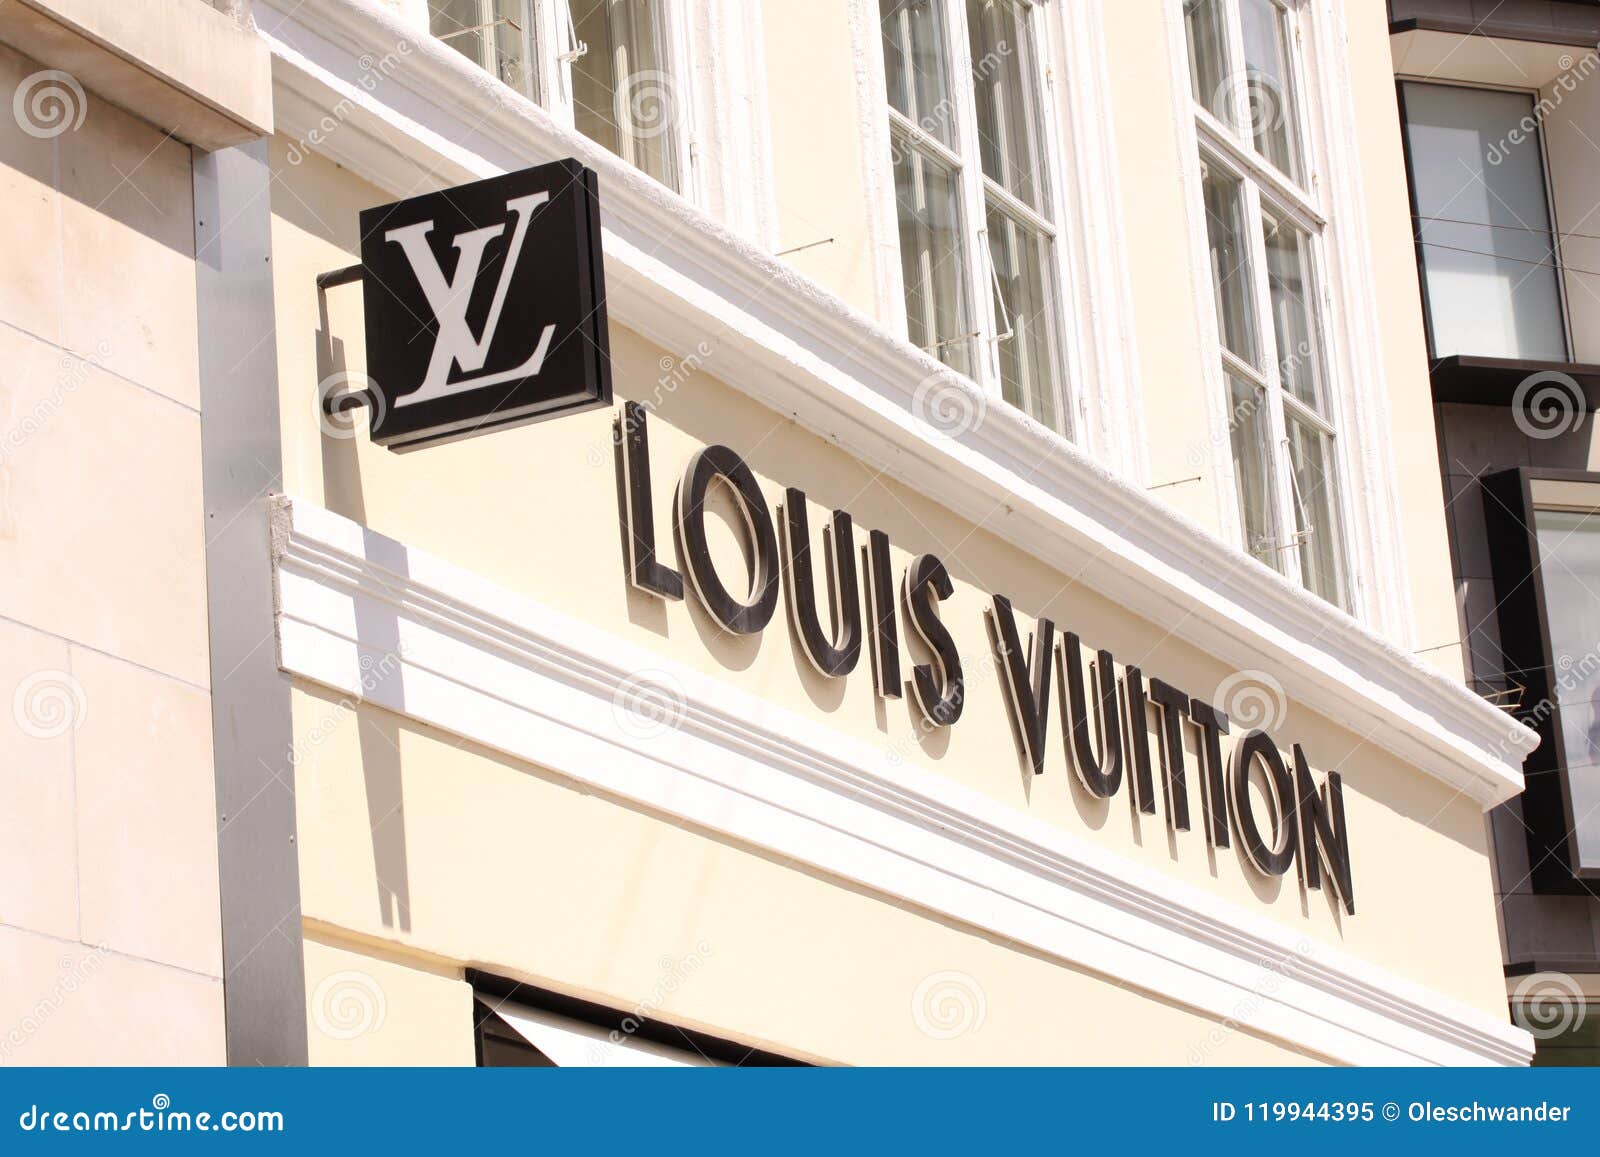 Louis Vuitton Logo Sign Panel on Shop. Louis Vuitton is a Famous